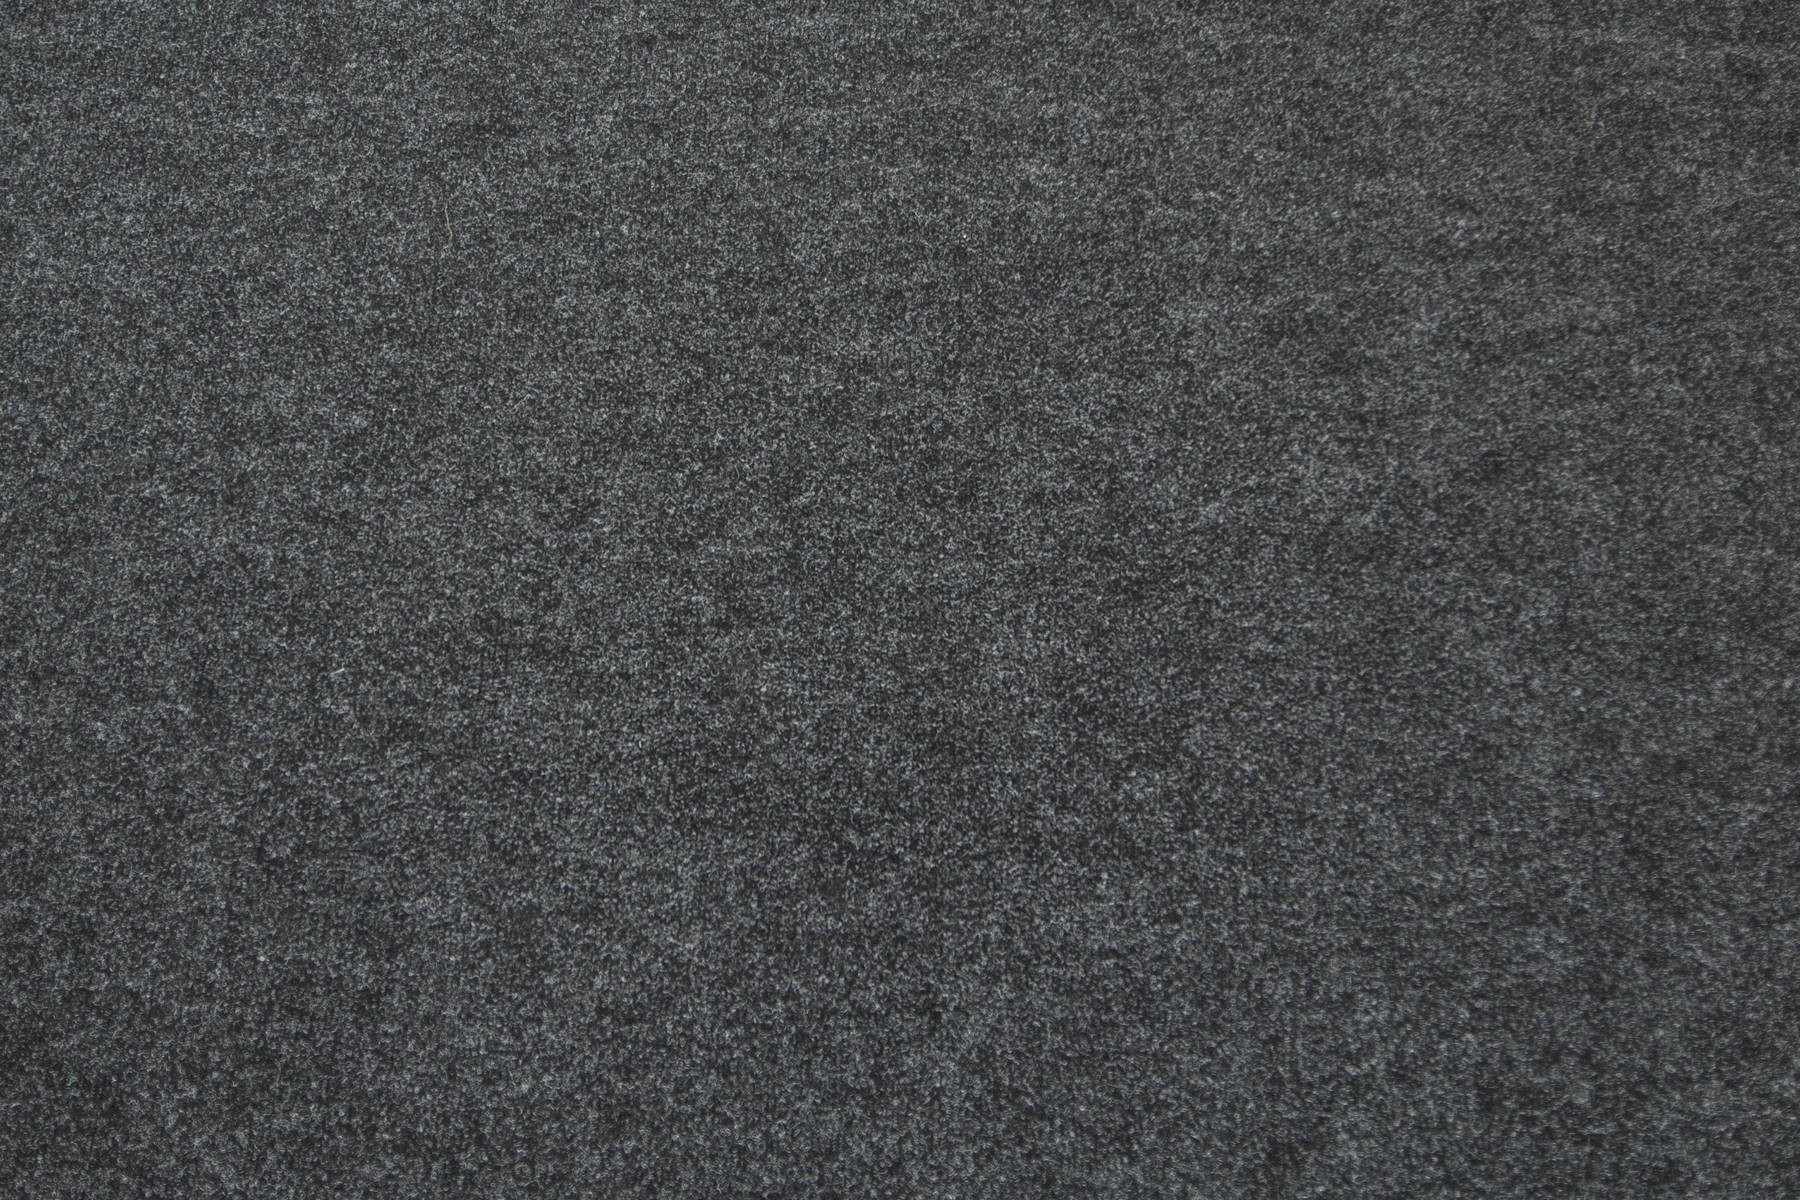 Metrážny koberec Gobi 78 Gel antracitový